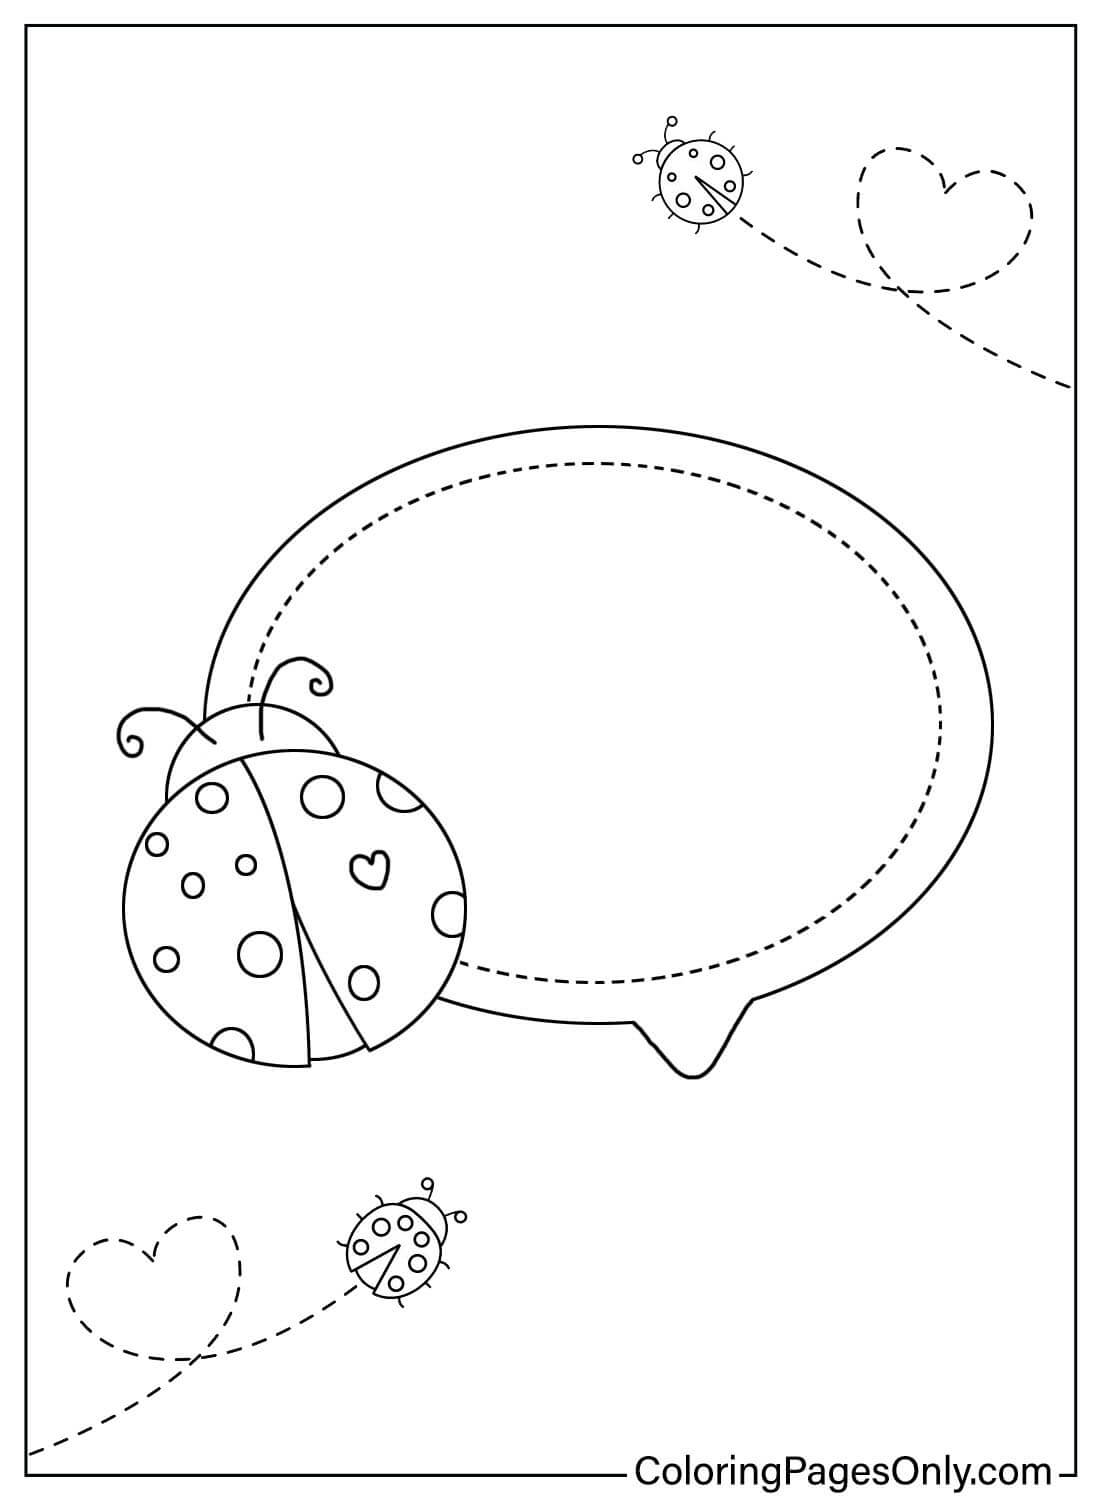 Página para colorear con burbujas de discurso de Ladybug de Ladybug